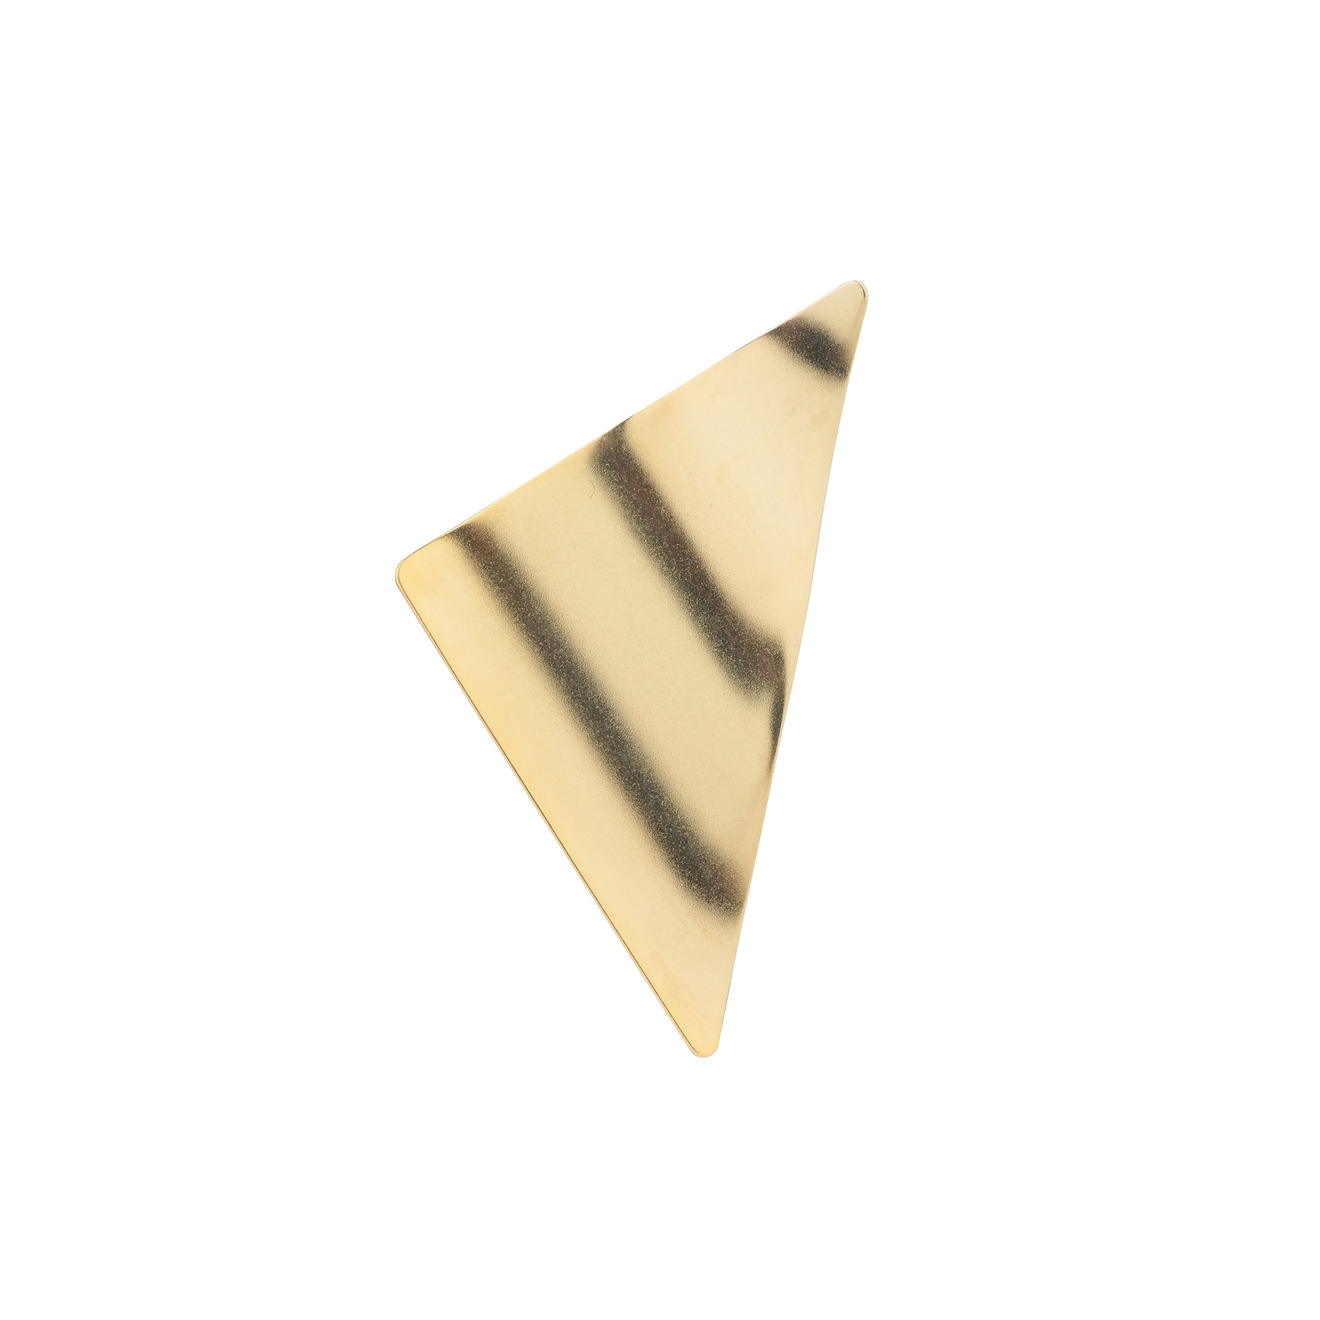 skye позолоченная моносерьга из серебра из двух частей Khoshtrik Треугольная позолоченная моносерьга из серебра